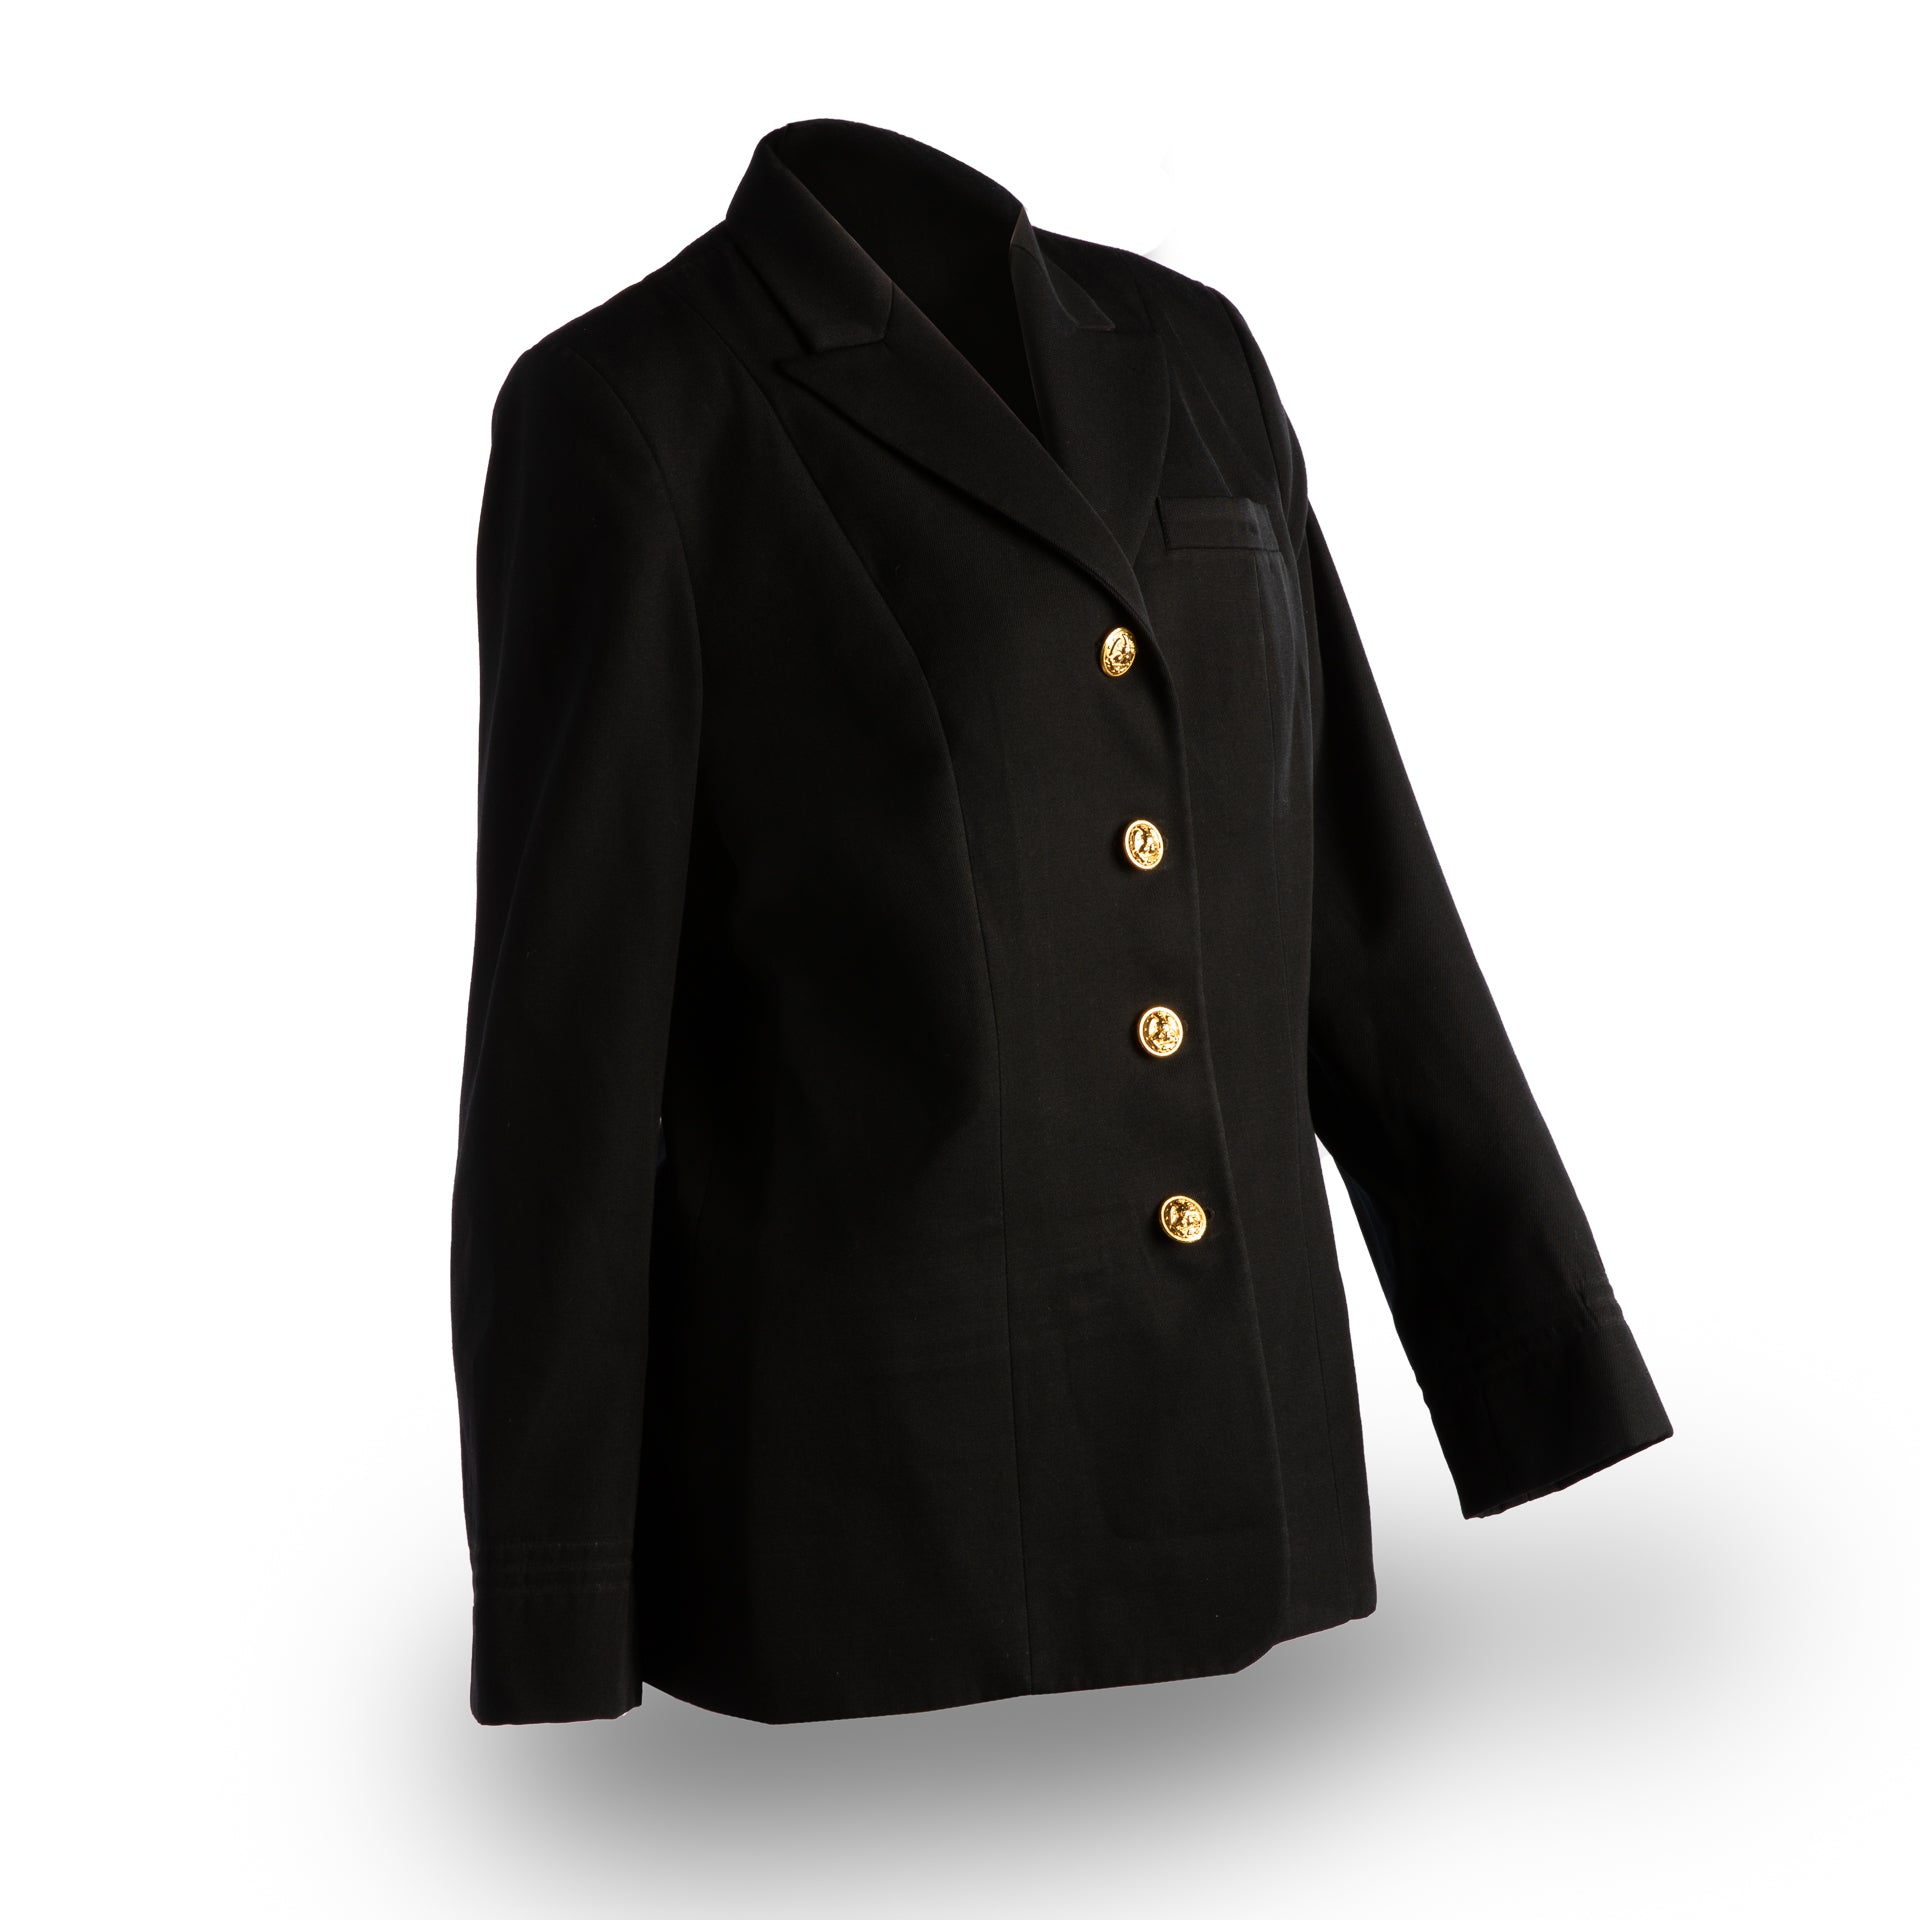 NAVY Women Service Dress Blue Jacket - Gold Buttons | Uniform 